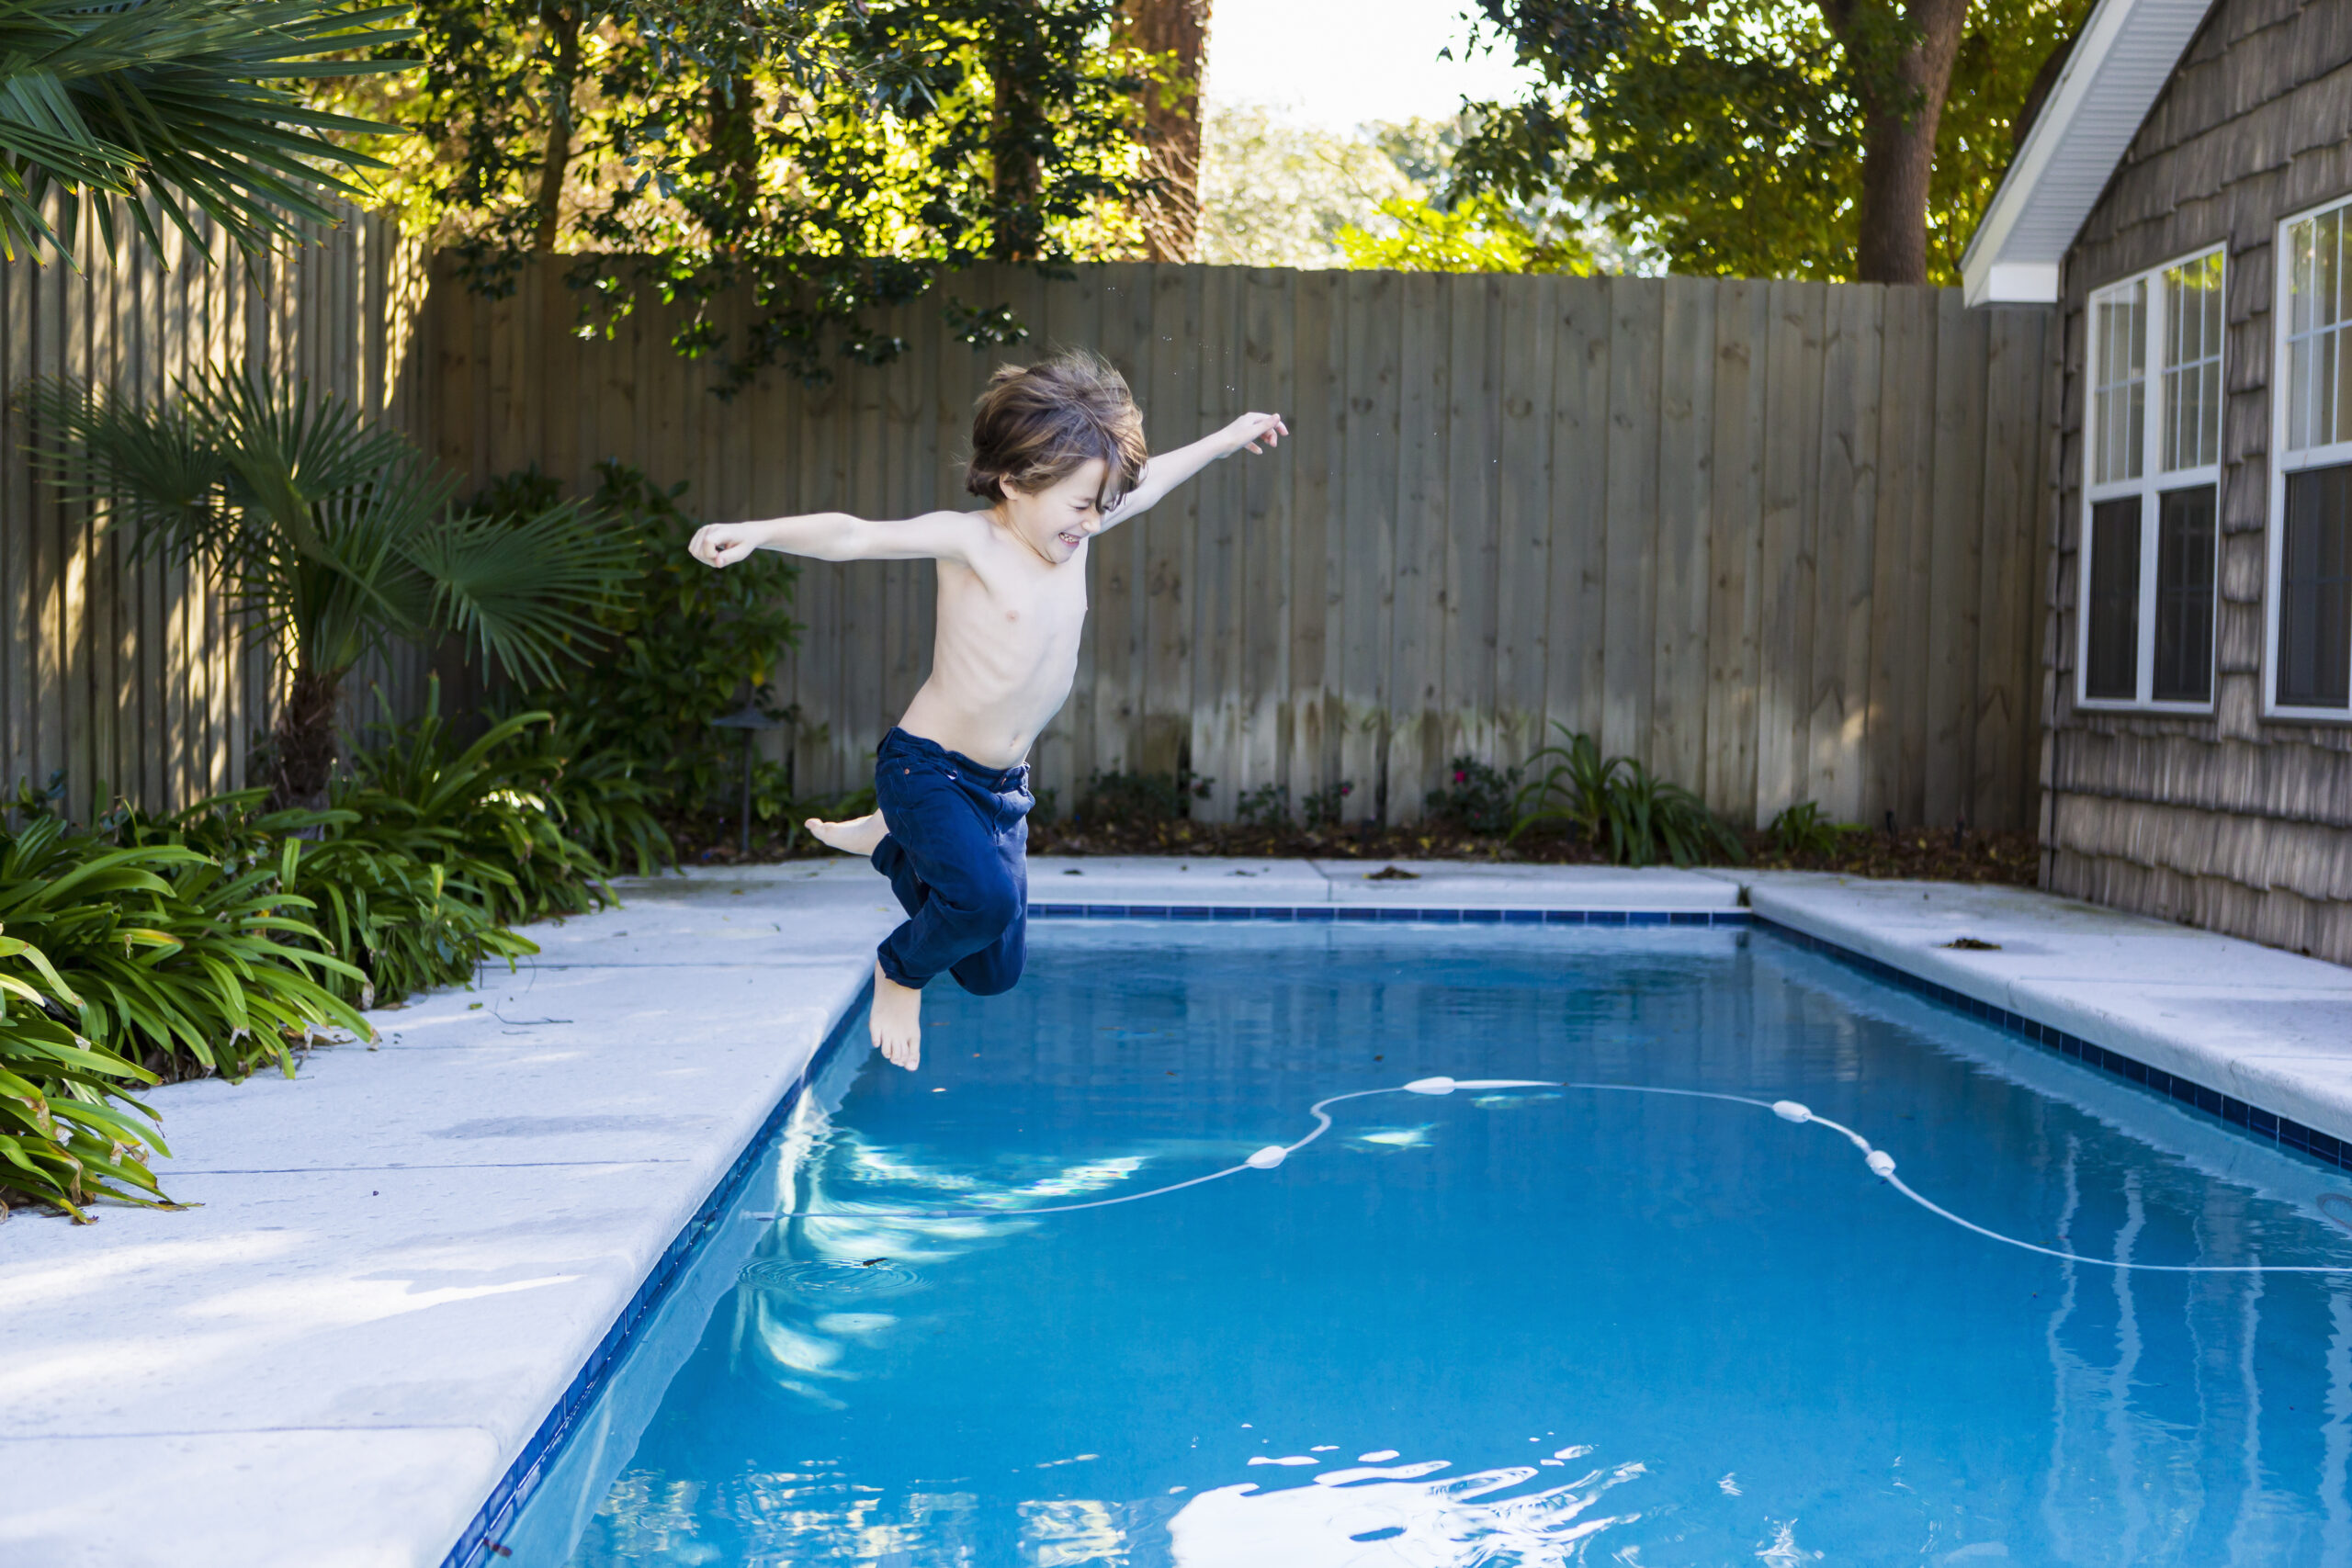 Jeune garçon qui saute dans une piscine sans sécurité